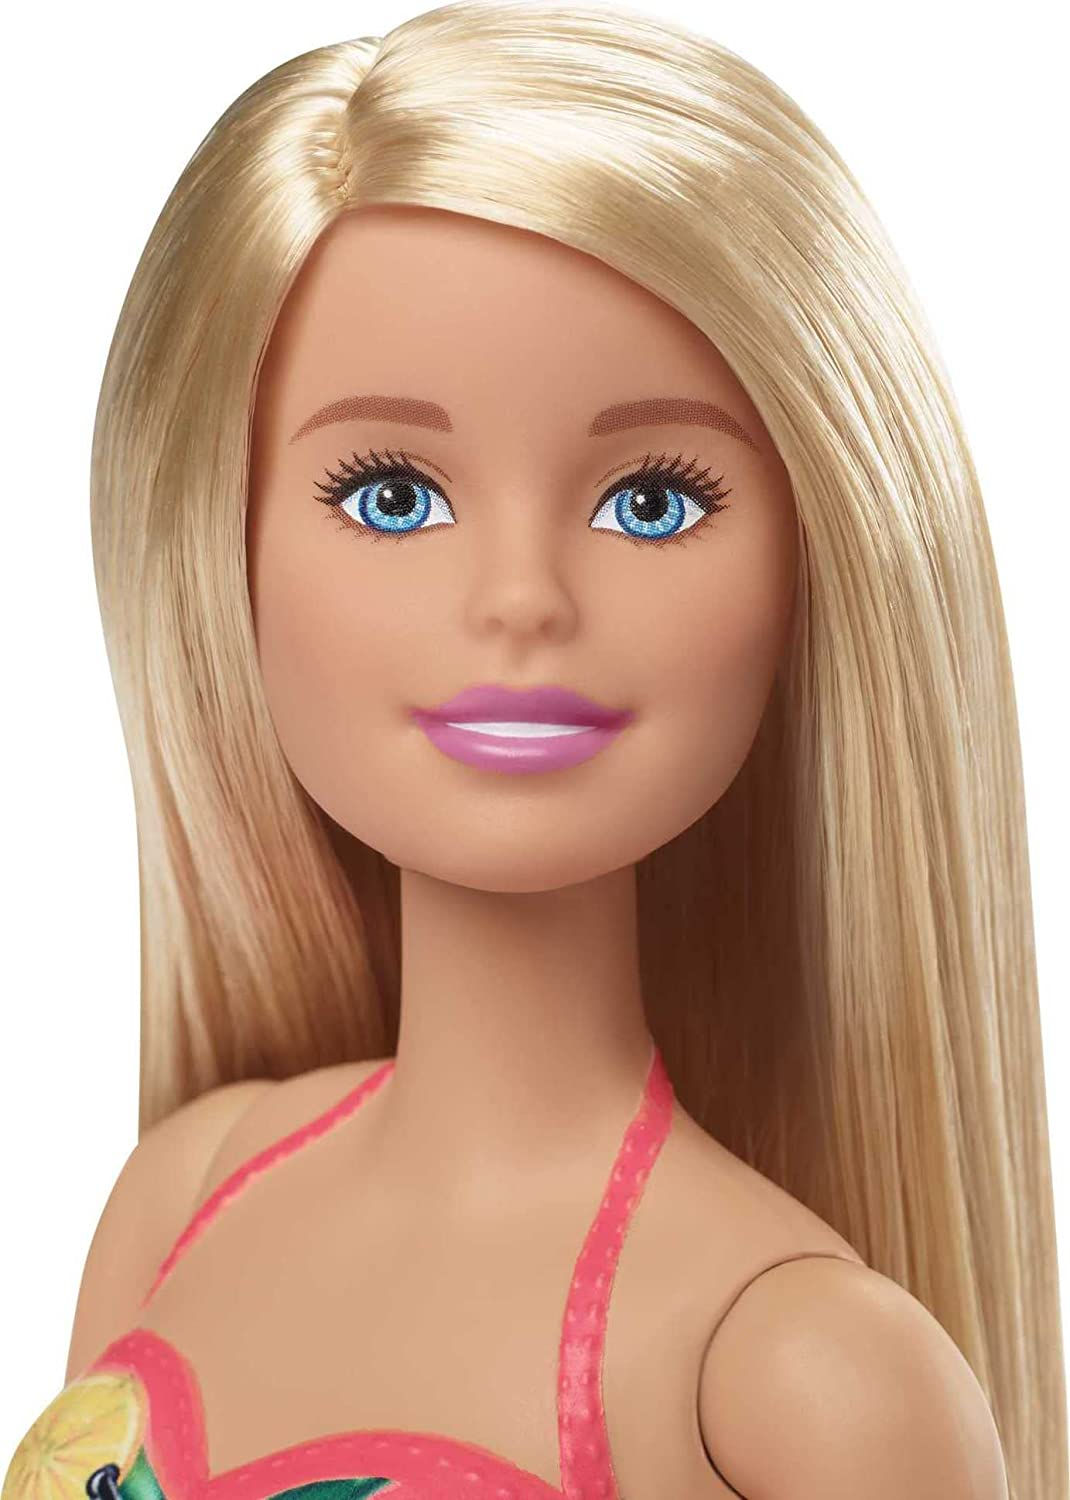 Barbie Boneca, loira de 11,5 polegadas, jogo de piscina com escorregador e acessórios, presente para crianças de 3 a 7 anos, GHL91